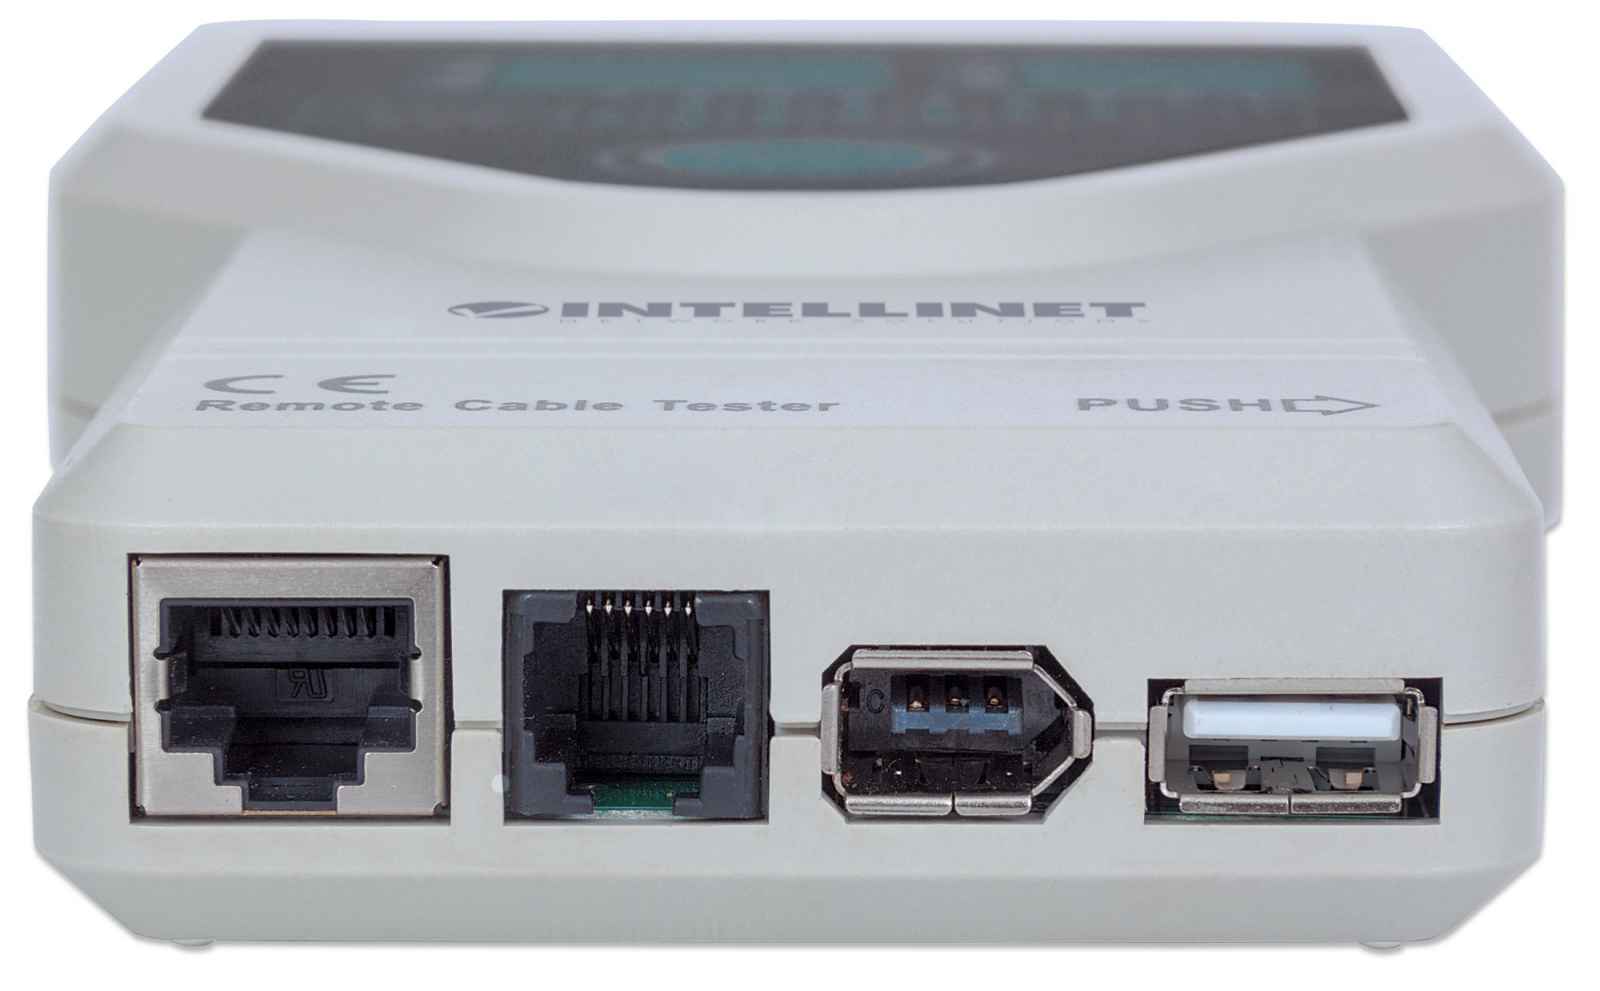 Comprobador de Cables 5 EN 1 para Cable RJ45 RJ11 RJ12 1394 USB